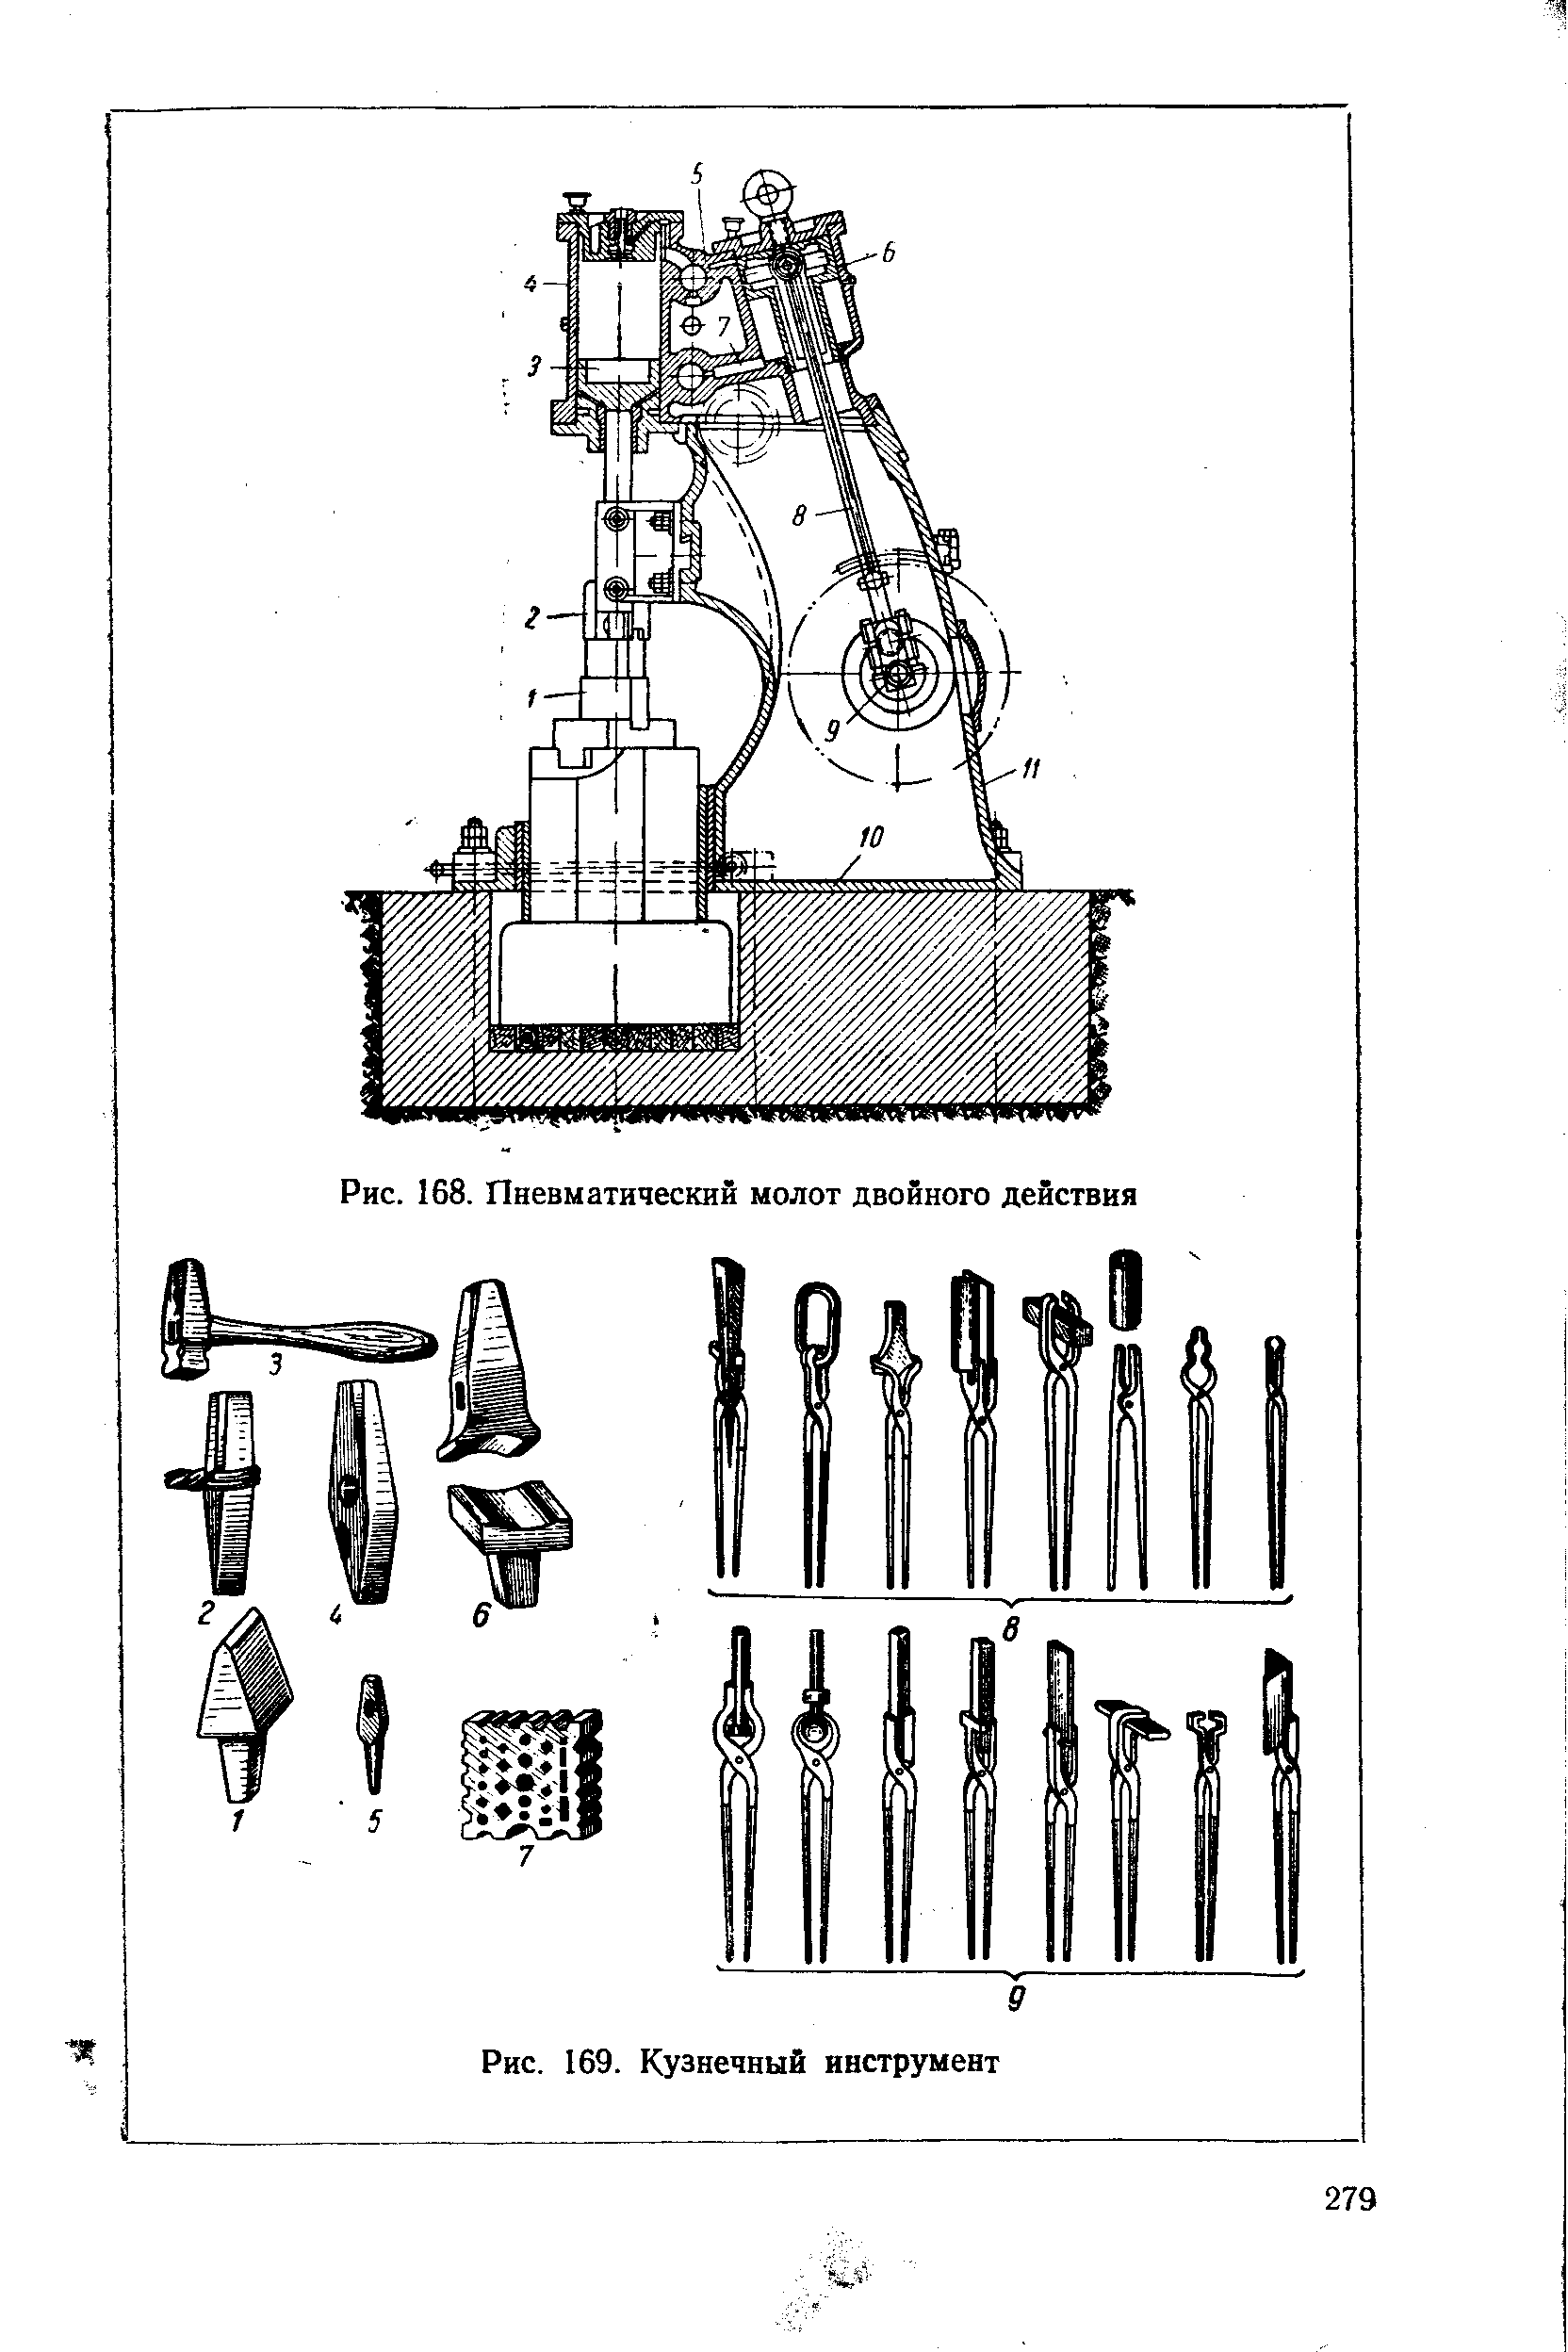 Установка кузнечного молота на виброопоры